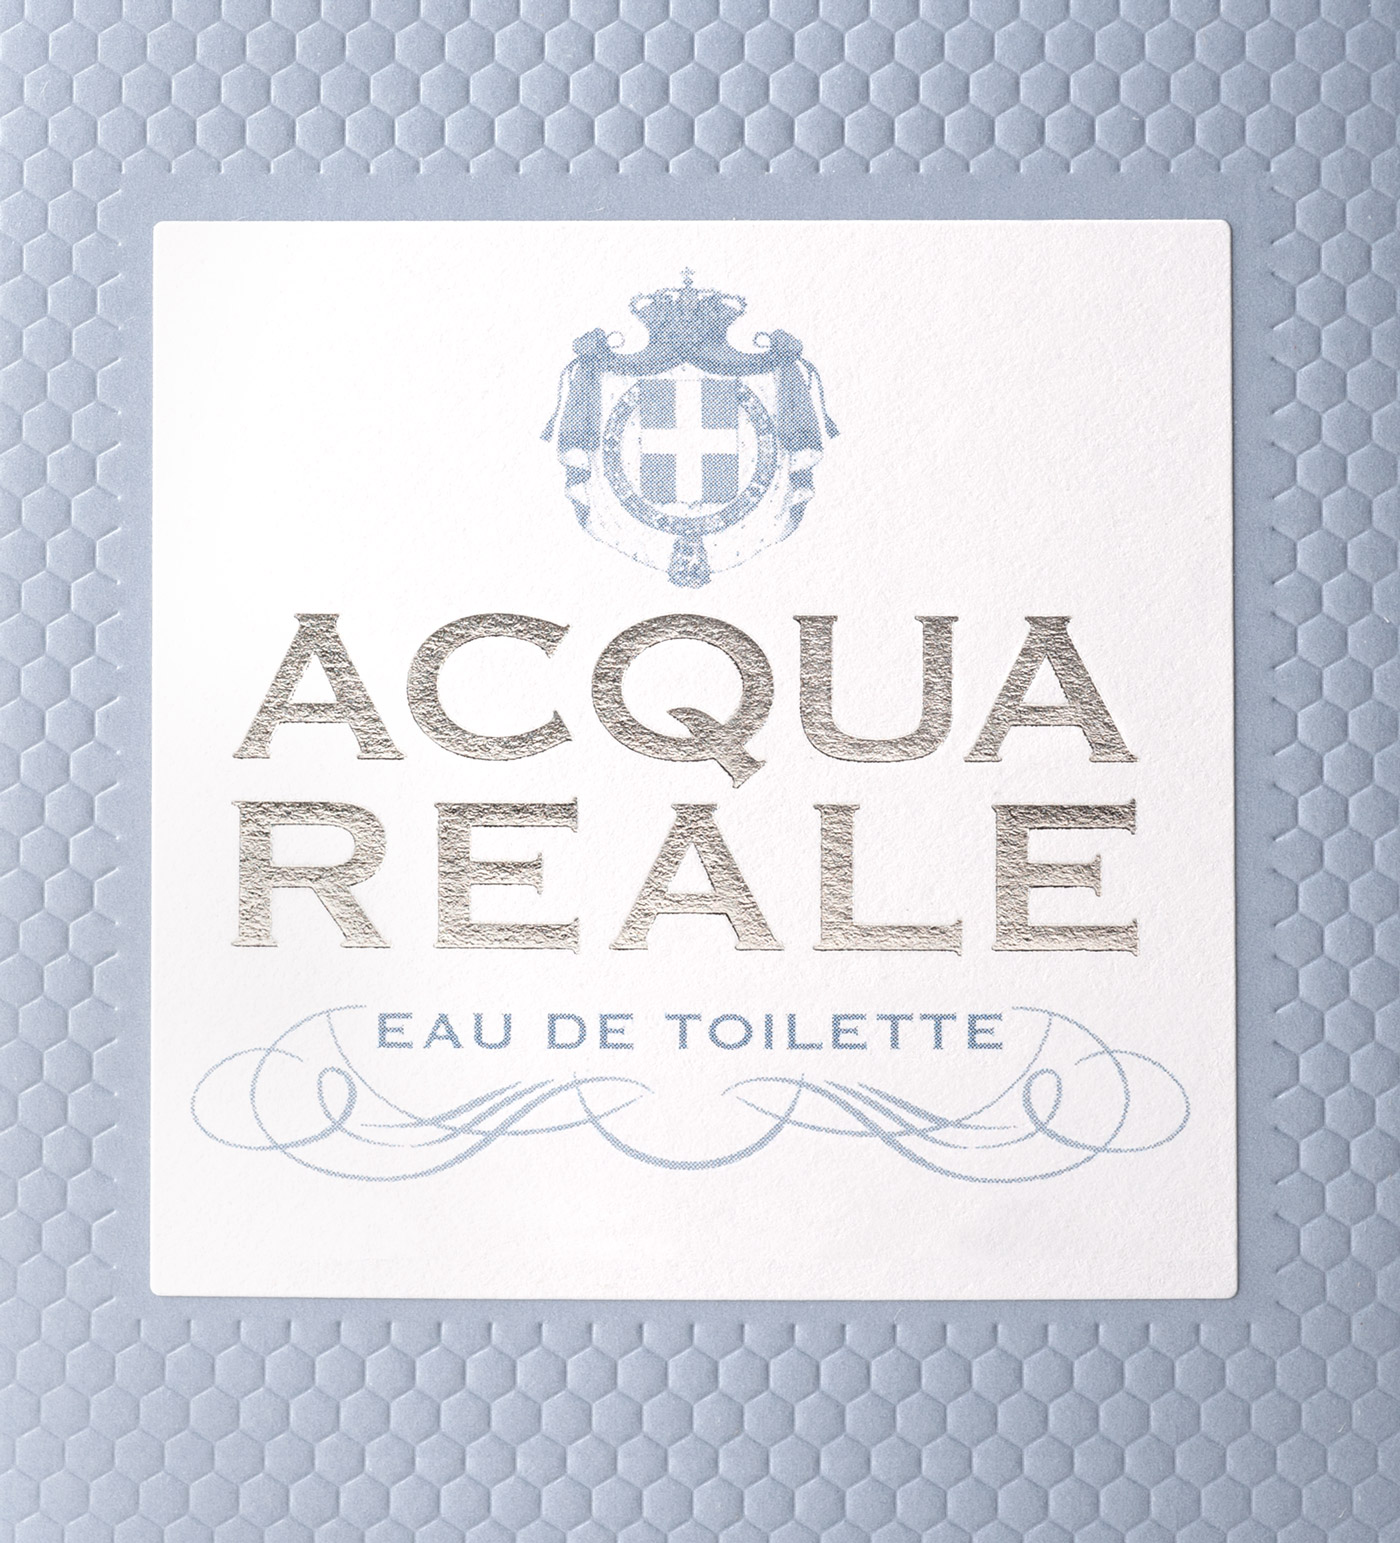 logo acqua reale eau de toilette